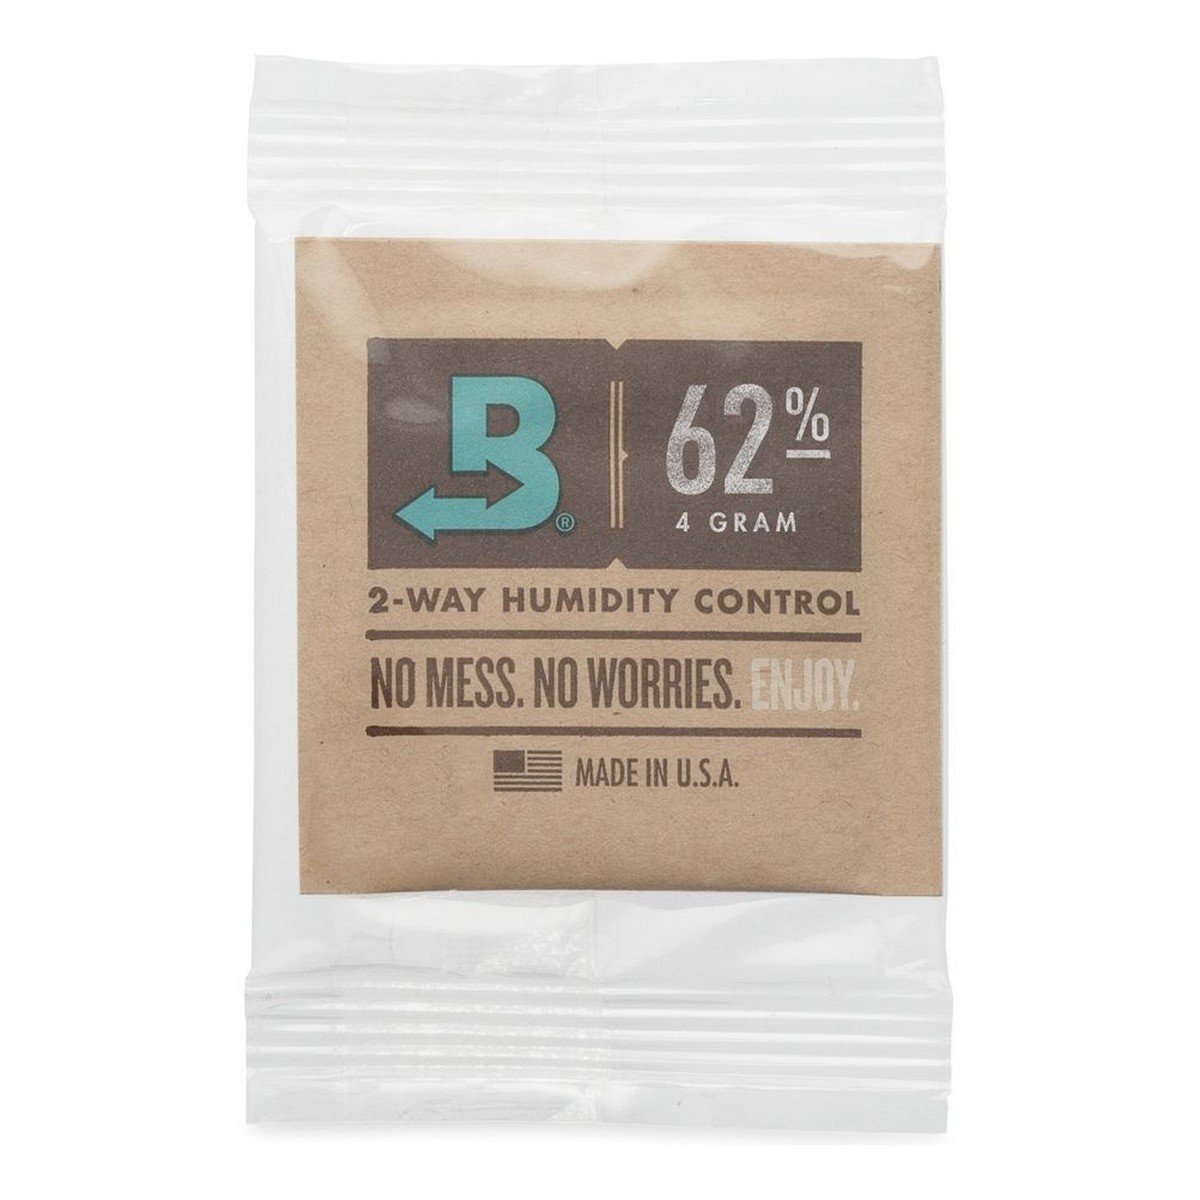 Boveda® 2-Way Humidity Packs 62%